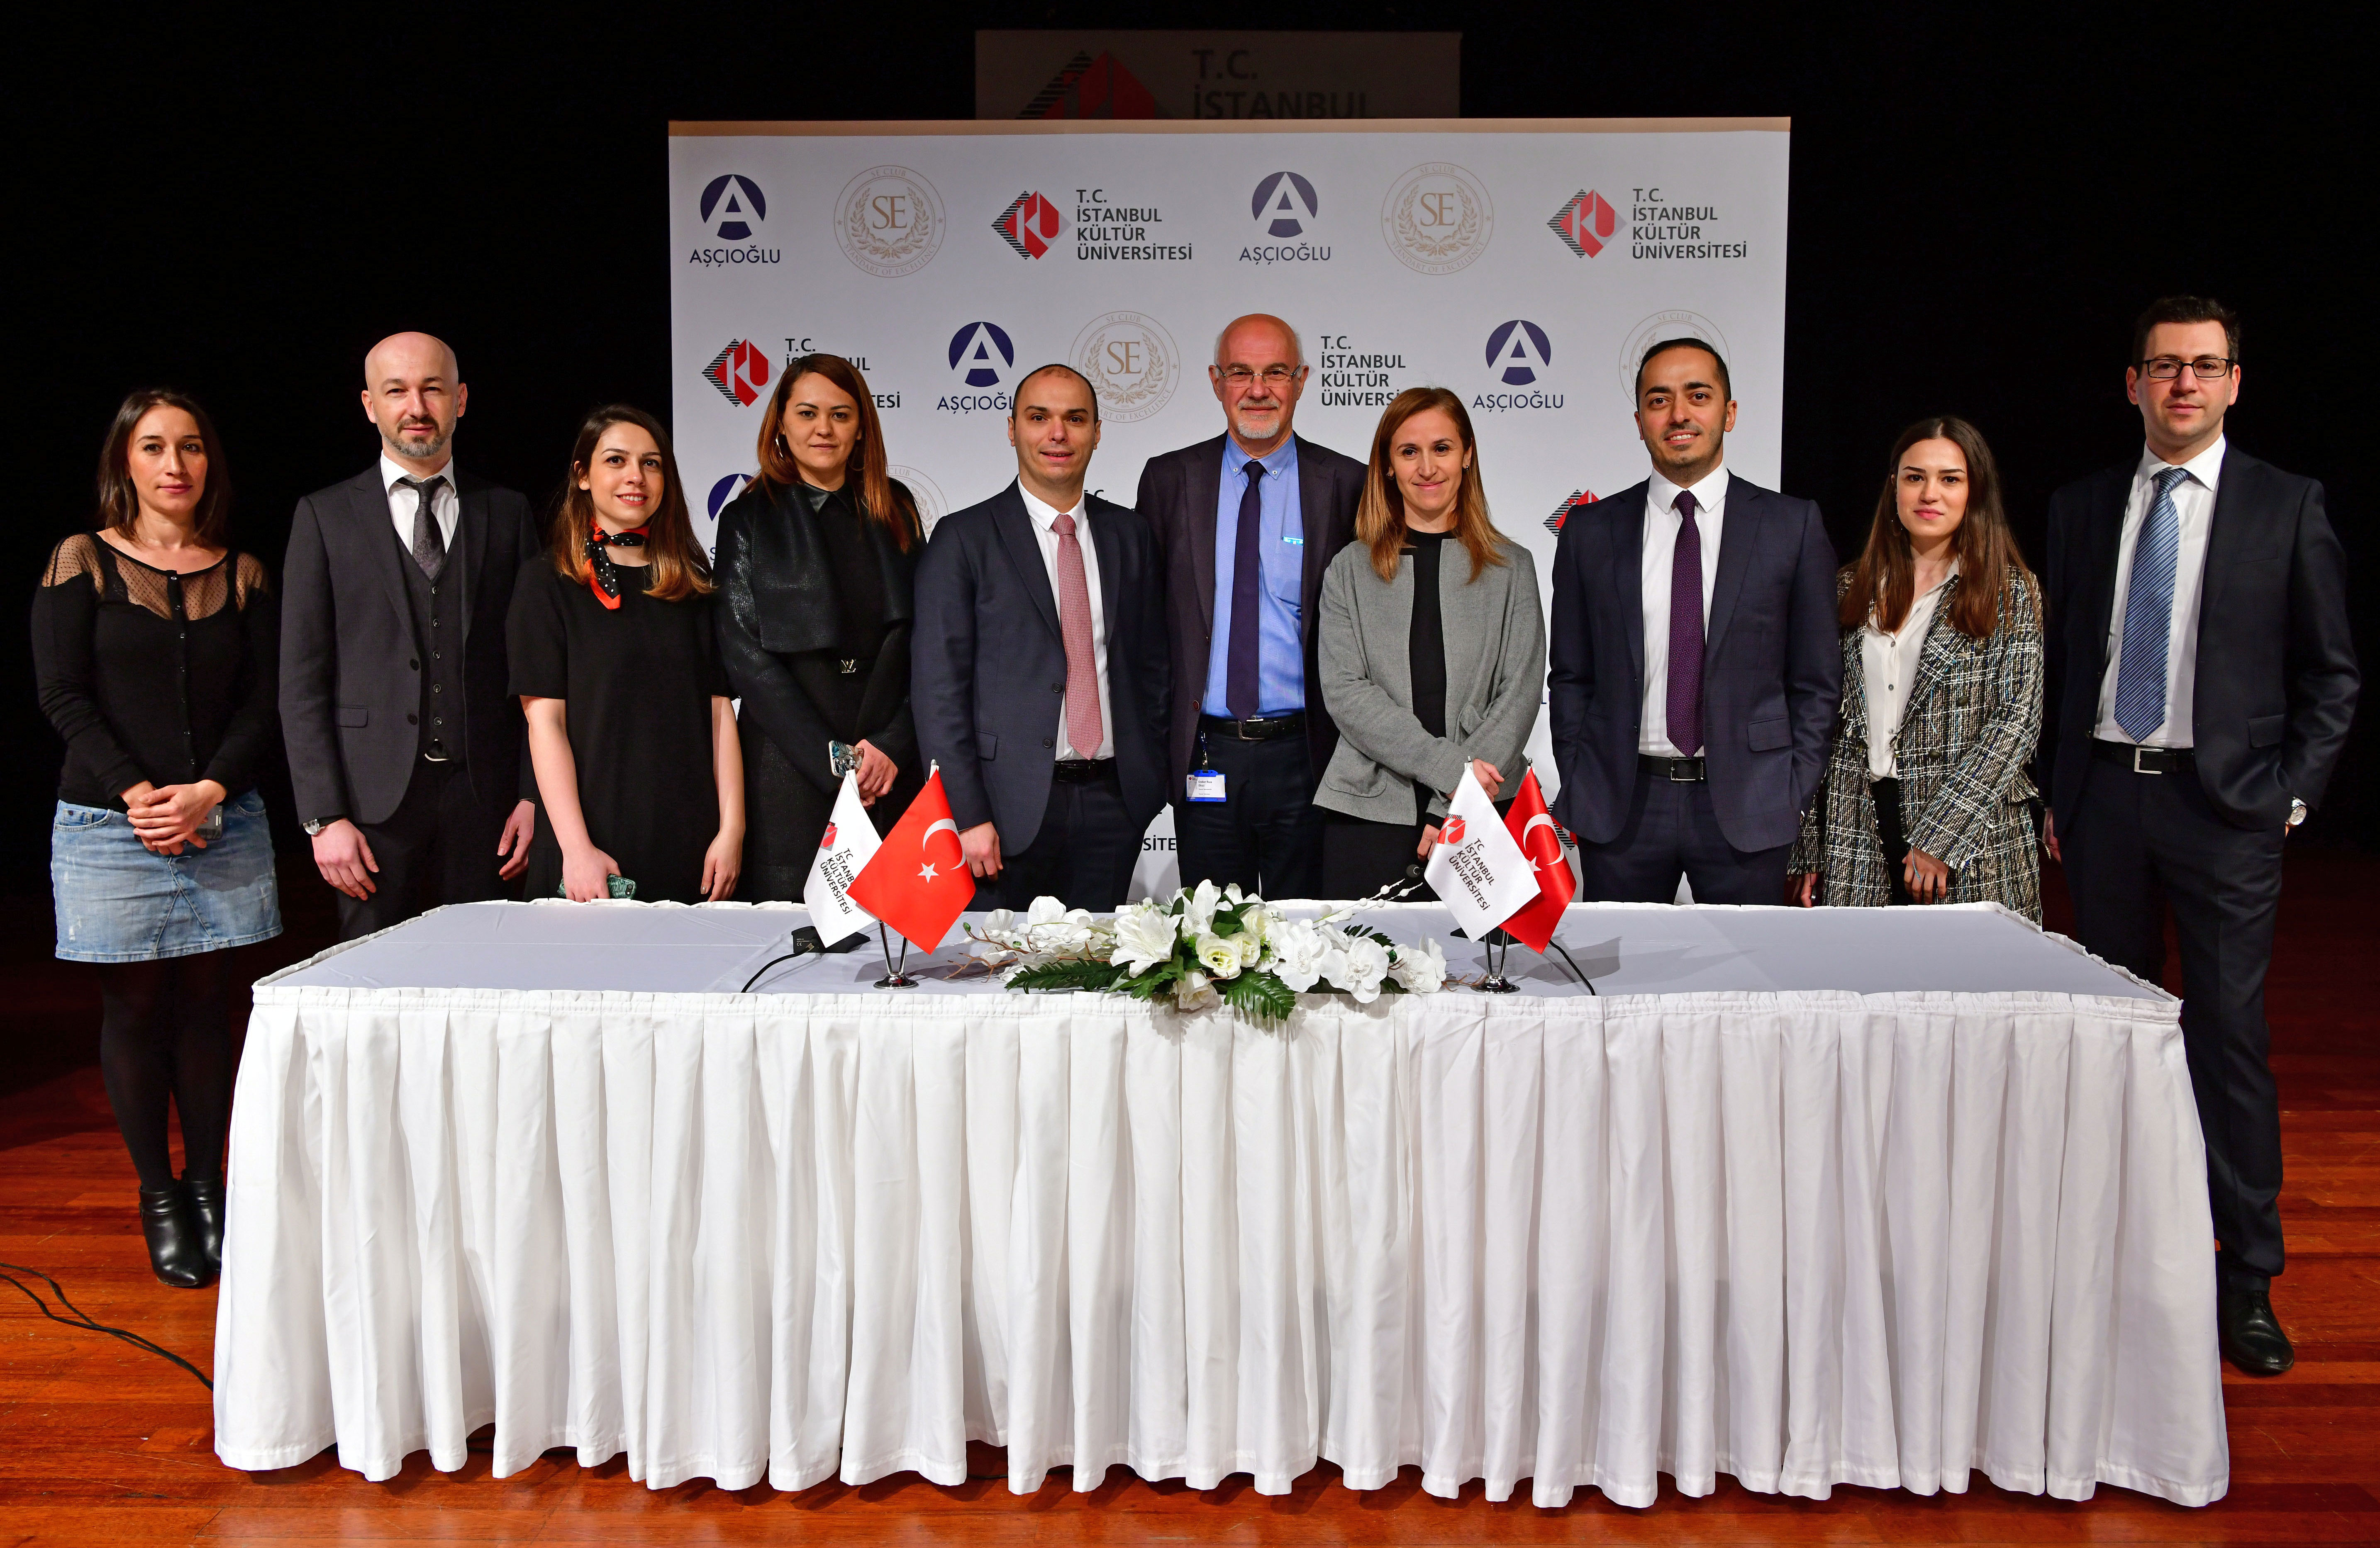 İstanbul Kültür Üniversitesi (İKÜ) ile Aşçıoğlu Grubu Arasında Protokol İmzalandı